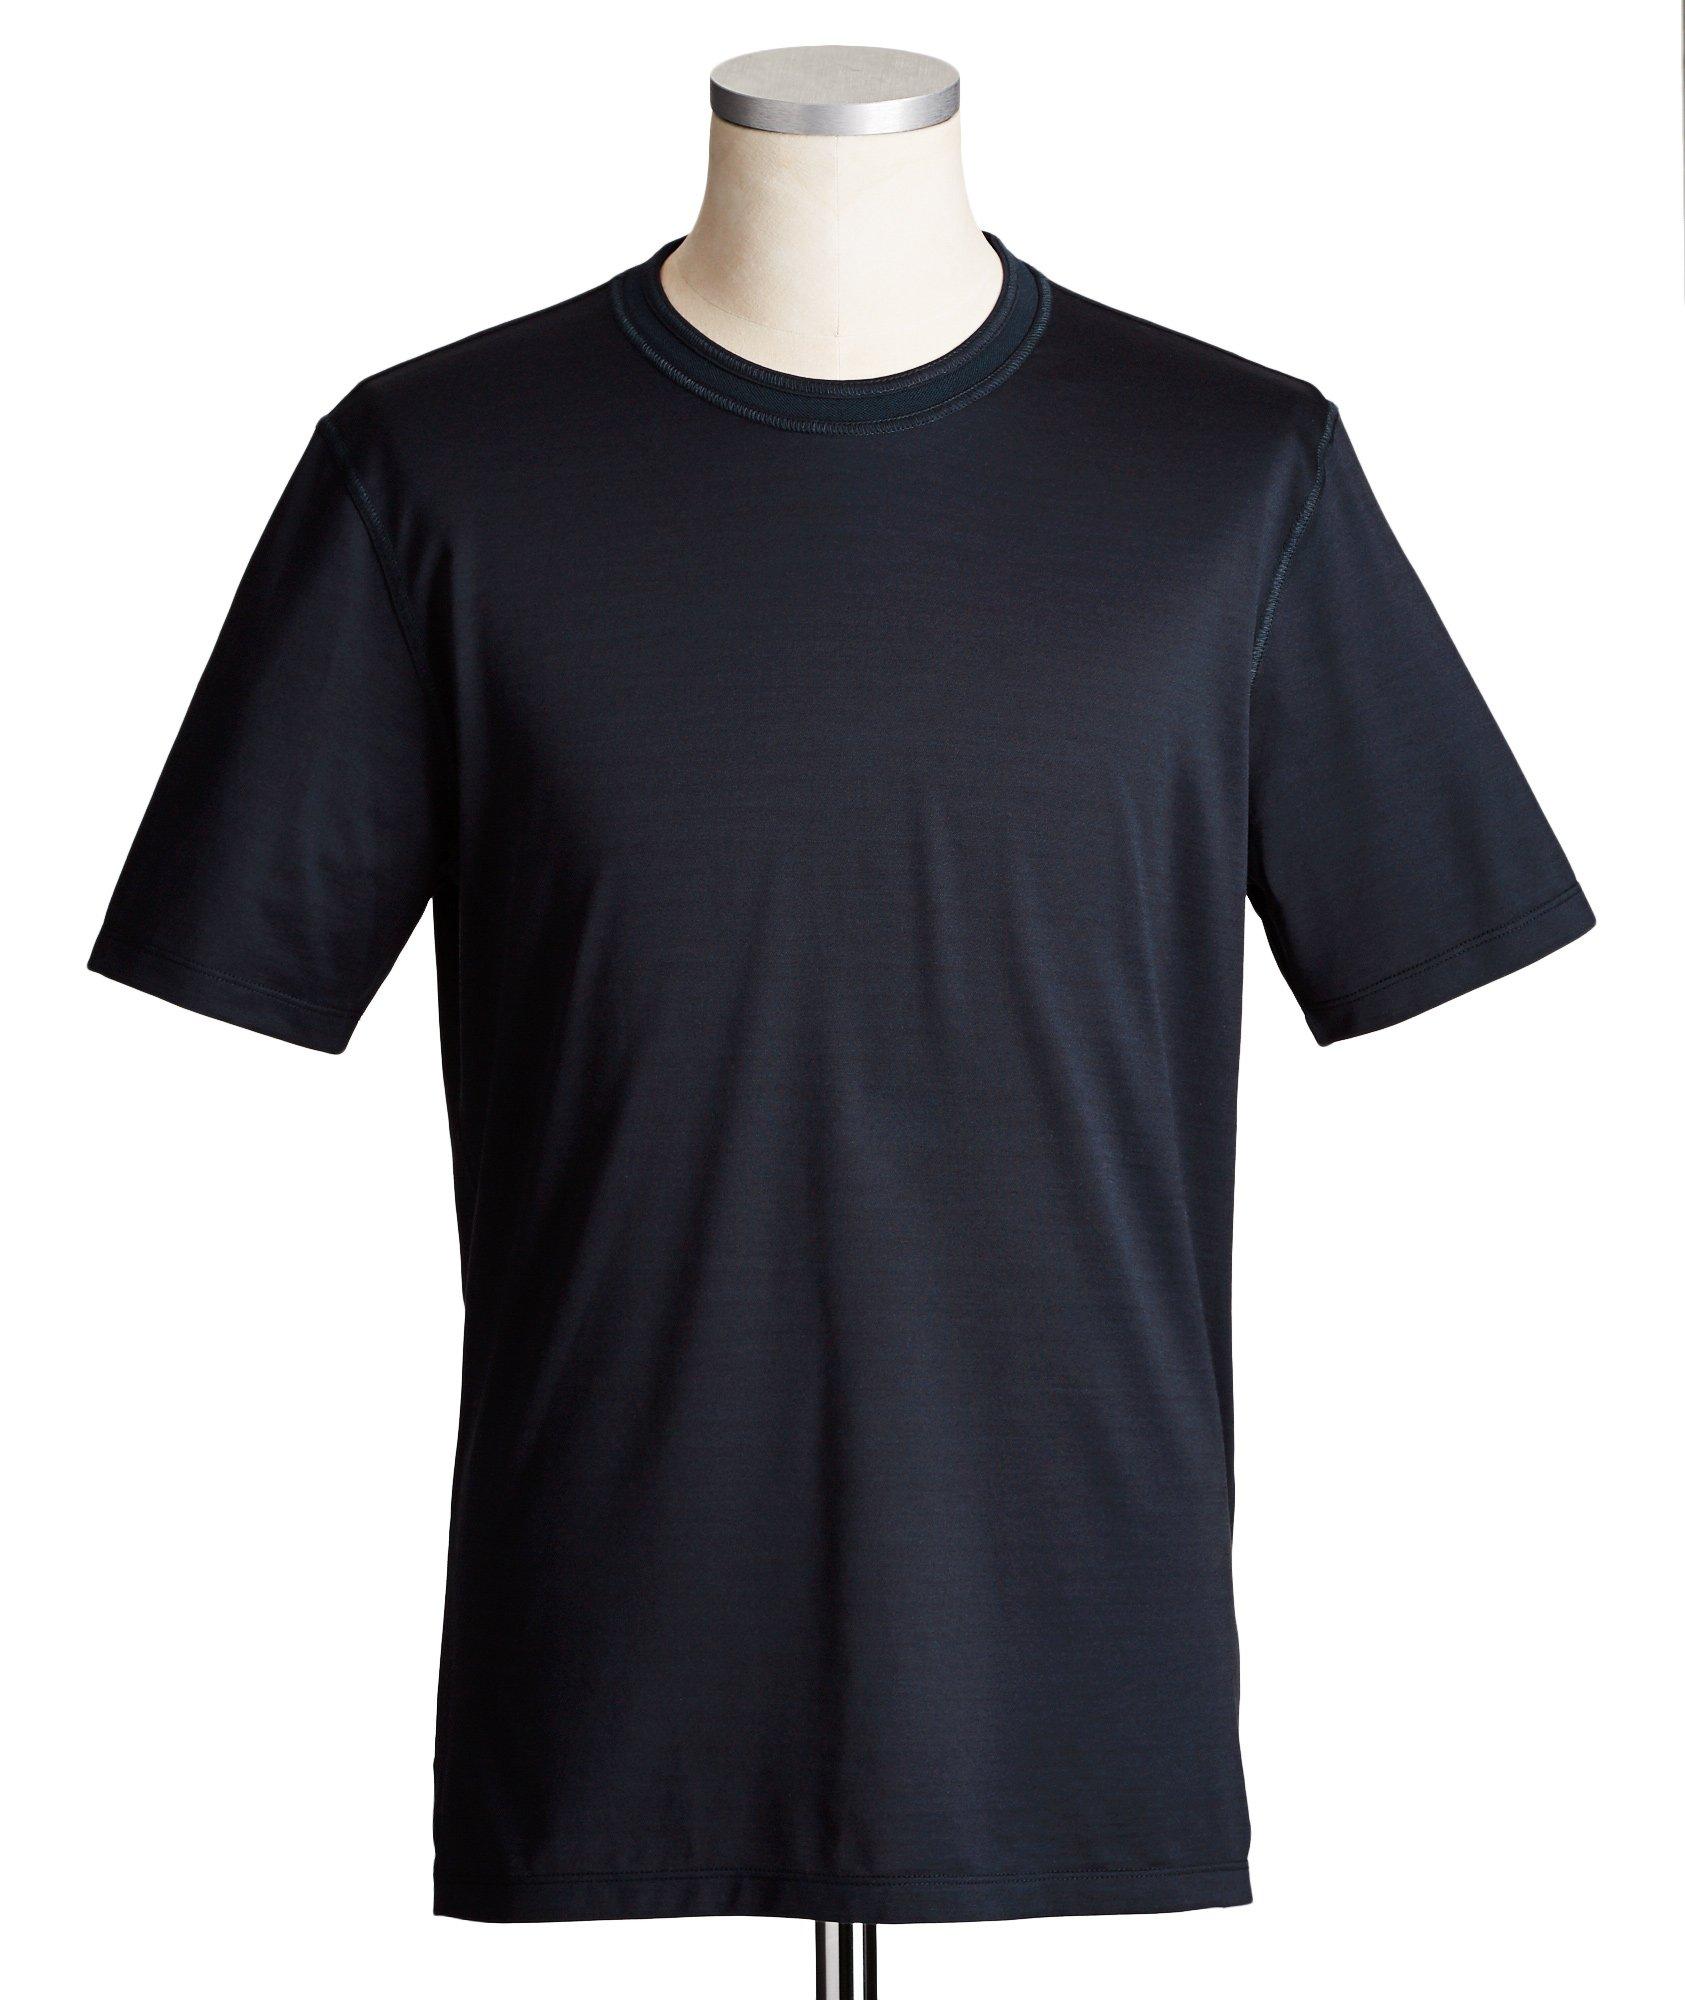 Cotton & Silk Blend T-Shirt image 0